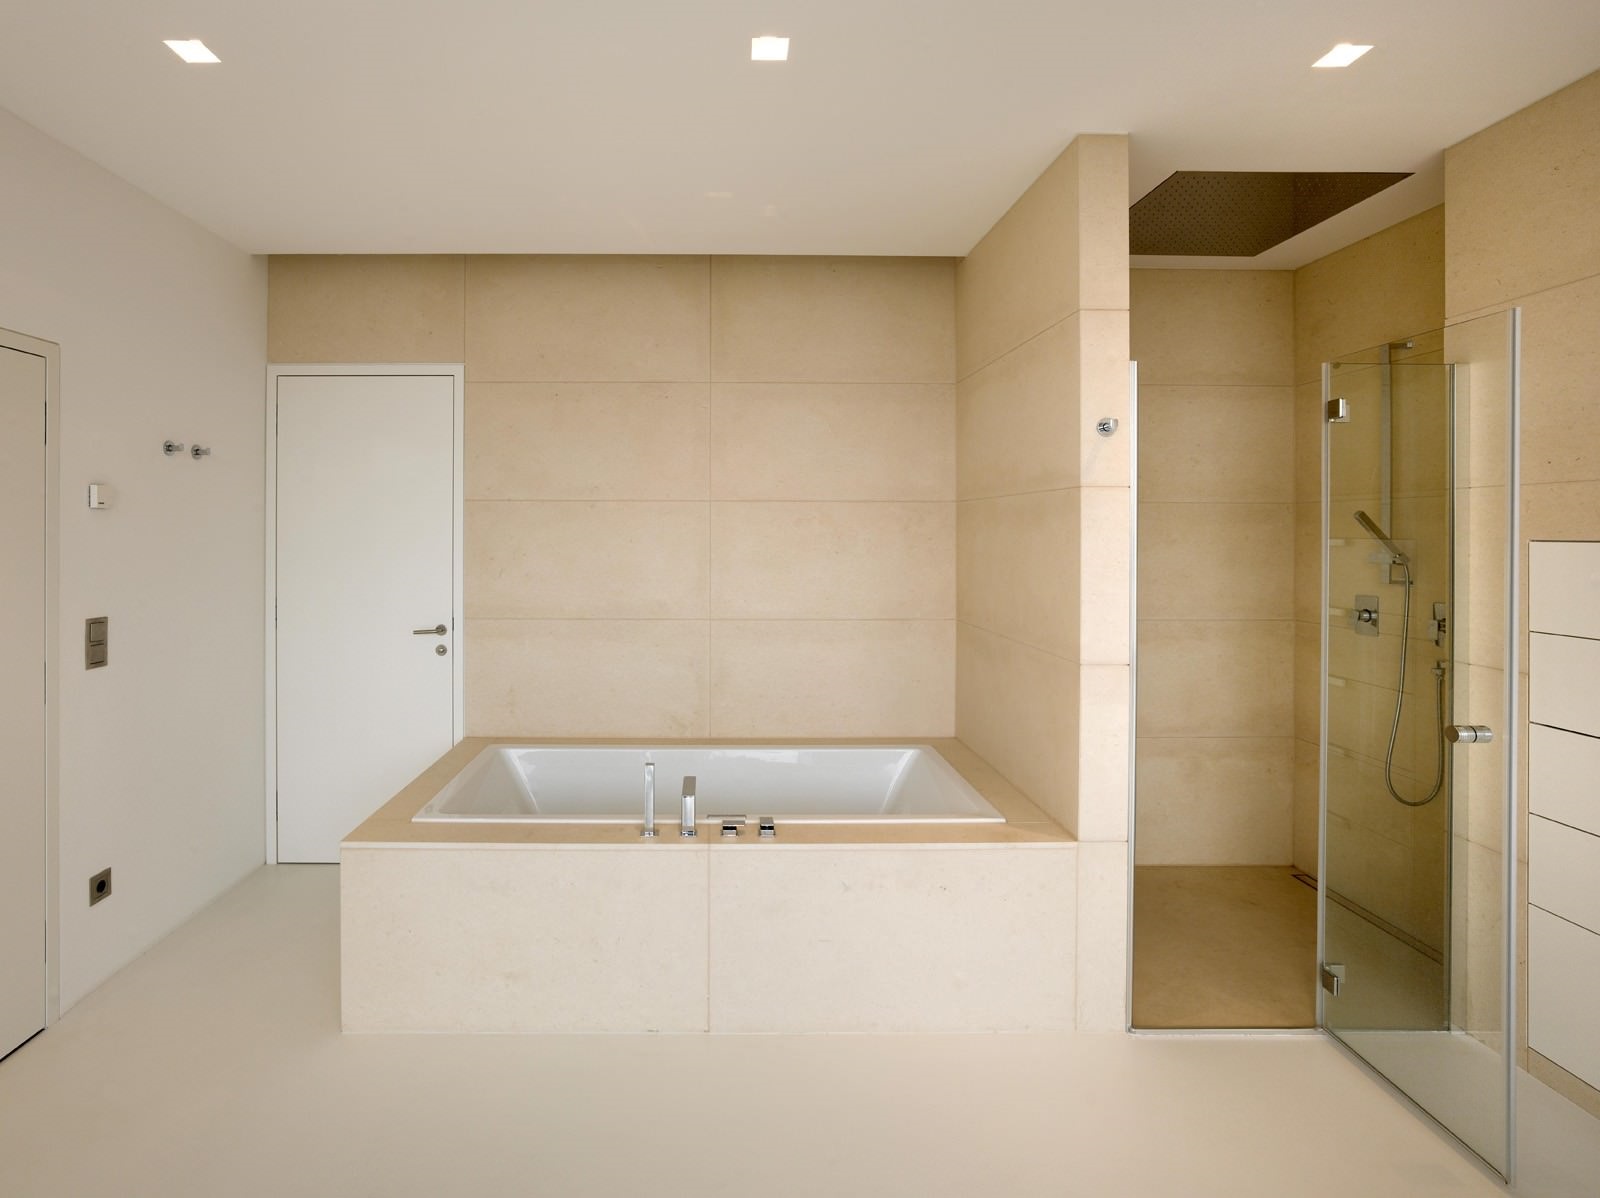 Un exemple d'un beau design de salle de bain de couleur beige